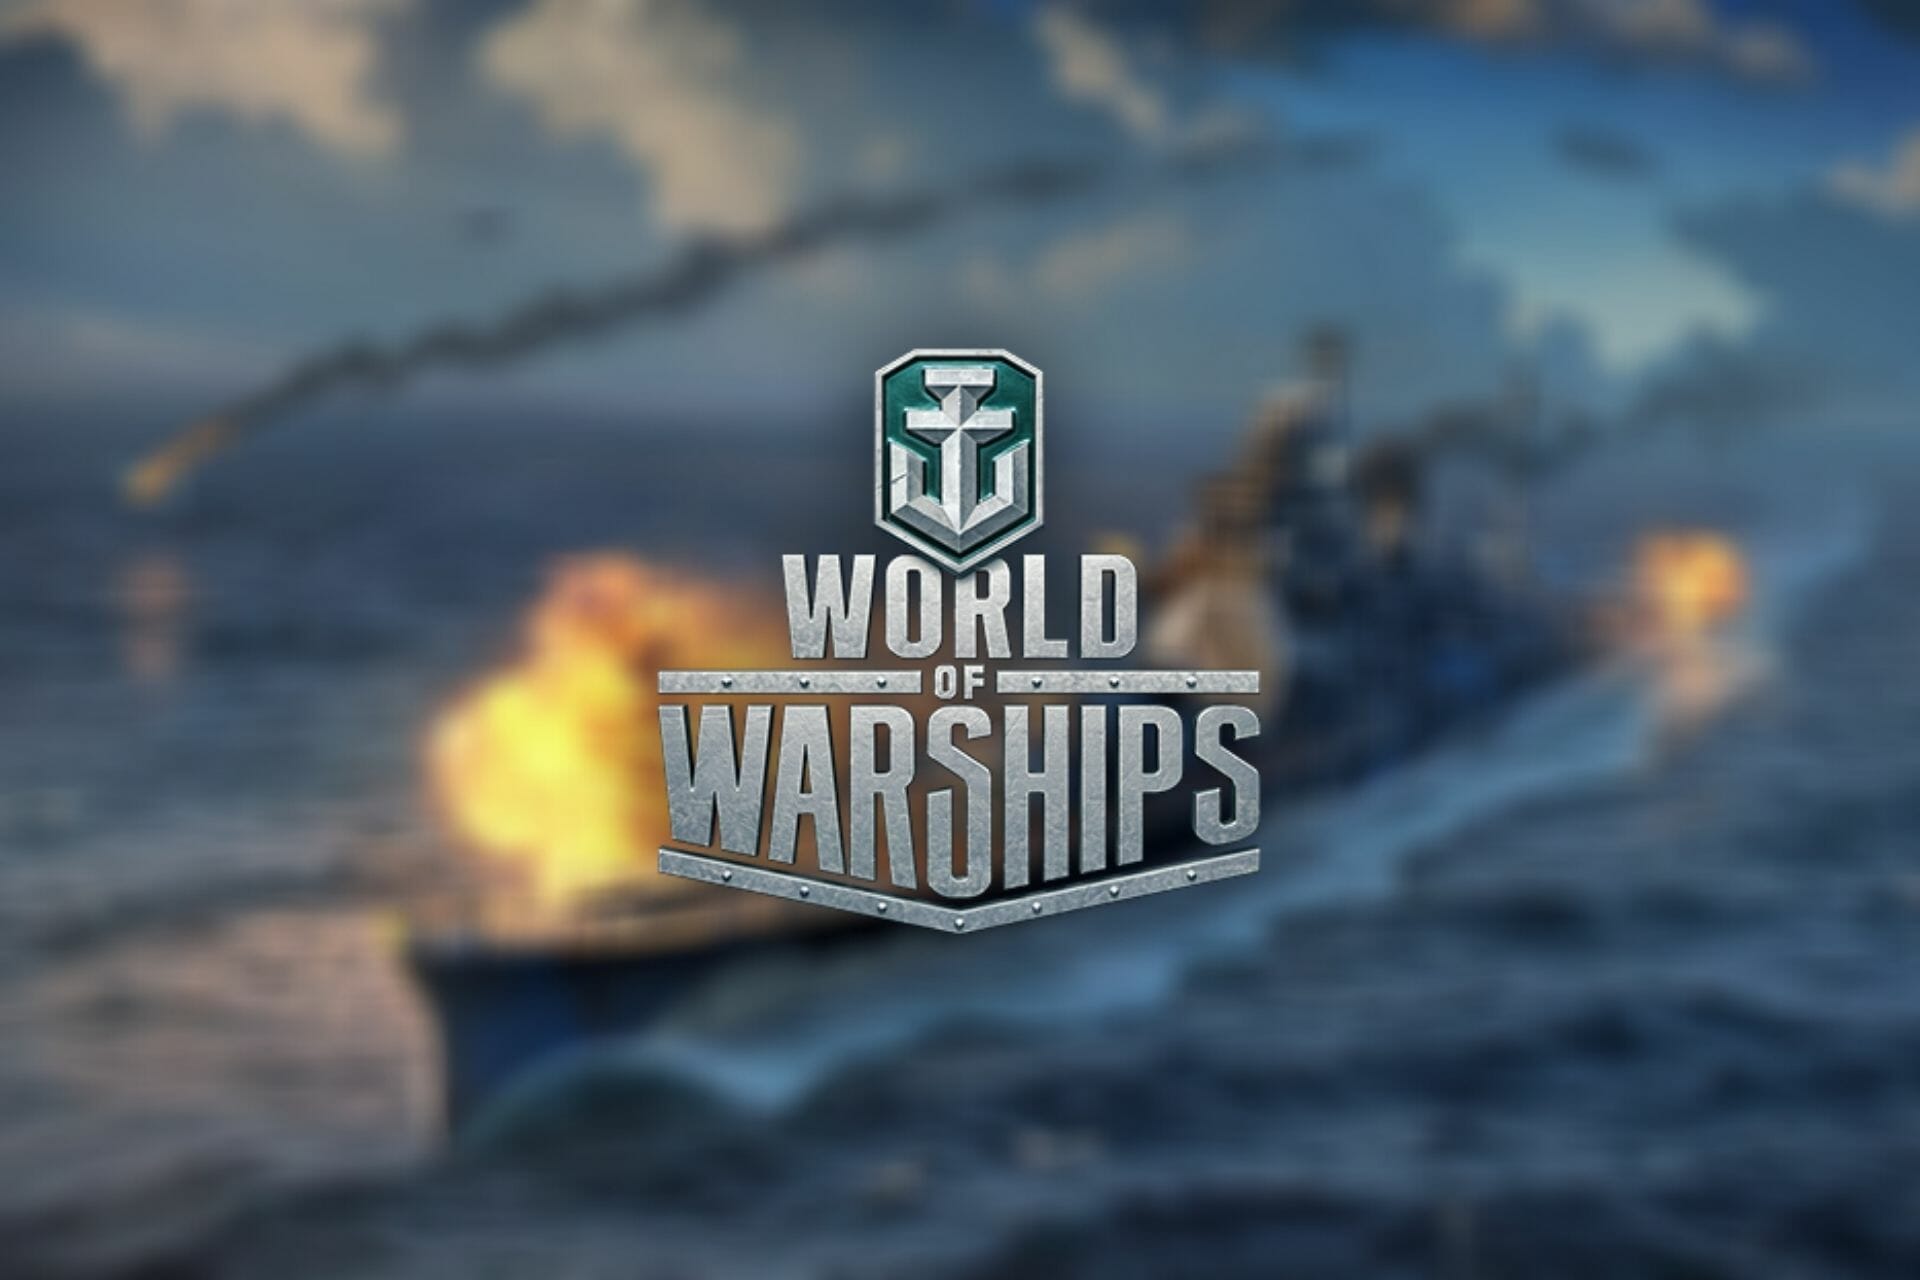 World of Warships packet loss